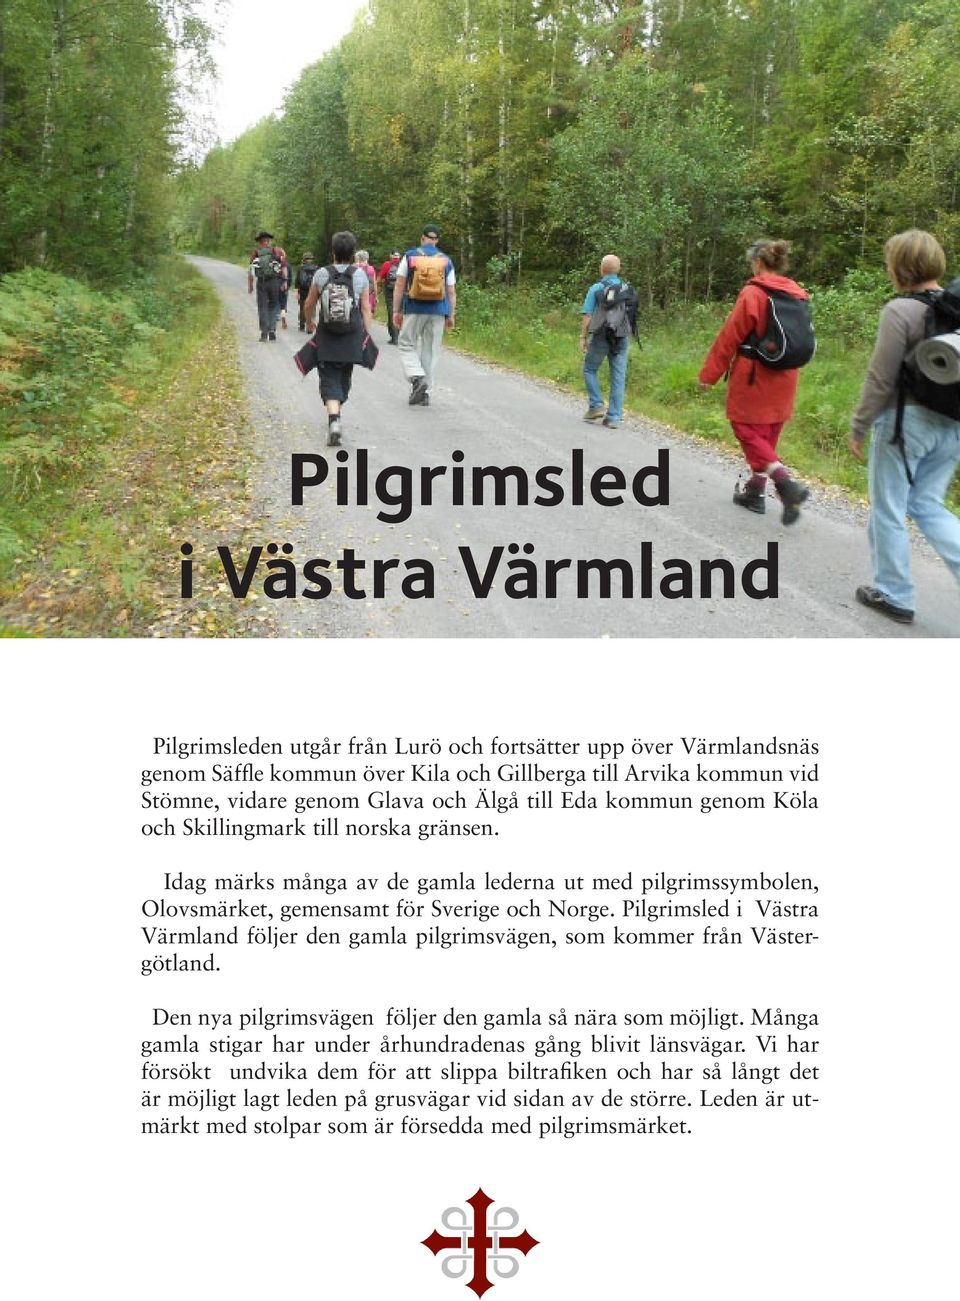 Pilgrimsled i Västra Värmland följer den gamla pilgrimsvägen, som kommer från Västergötland. Den nya pilgrimsvägen följer den gamla så nära som möjligt.